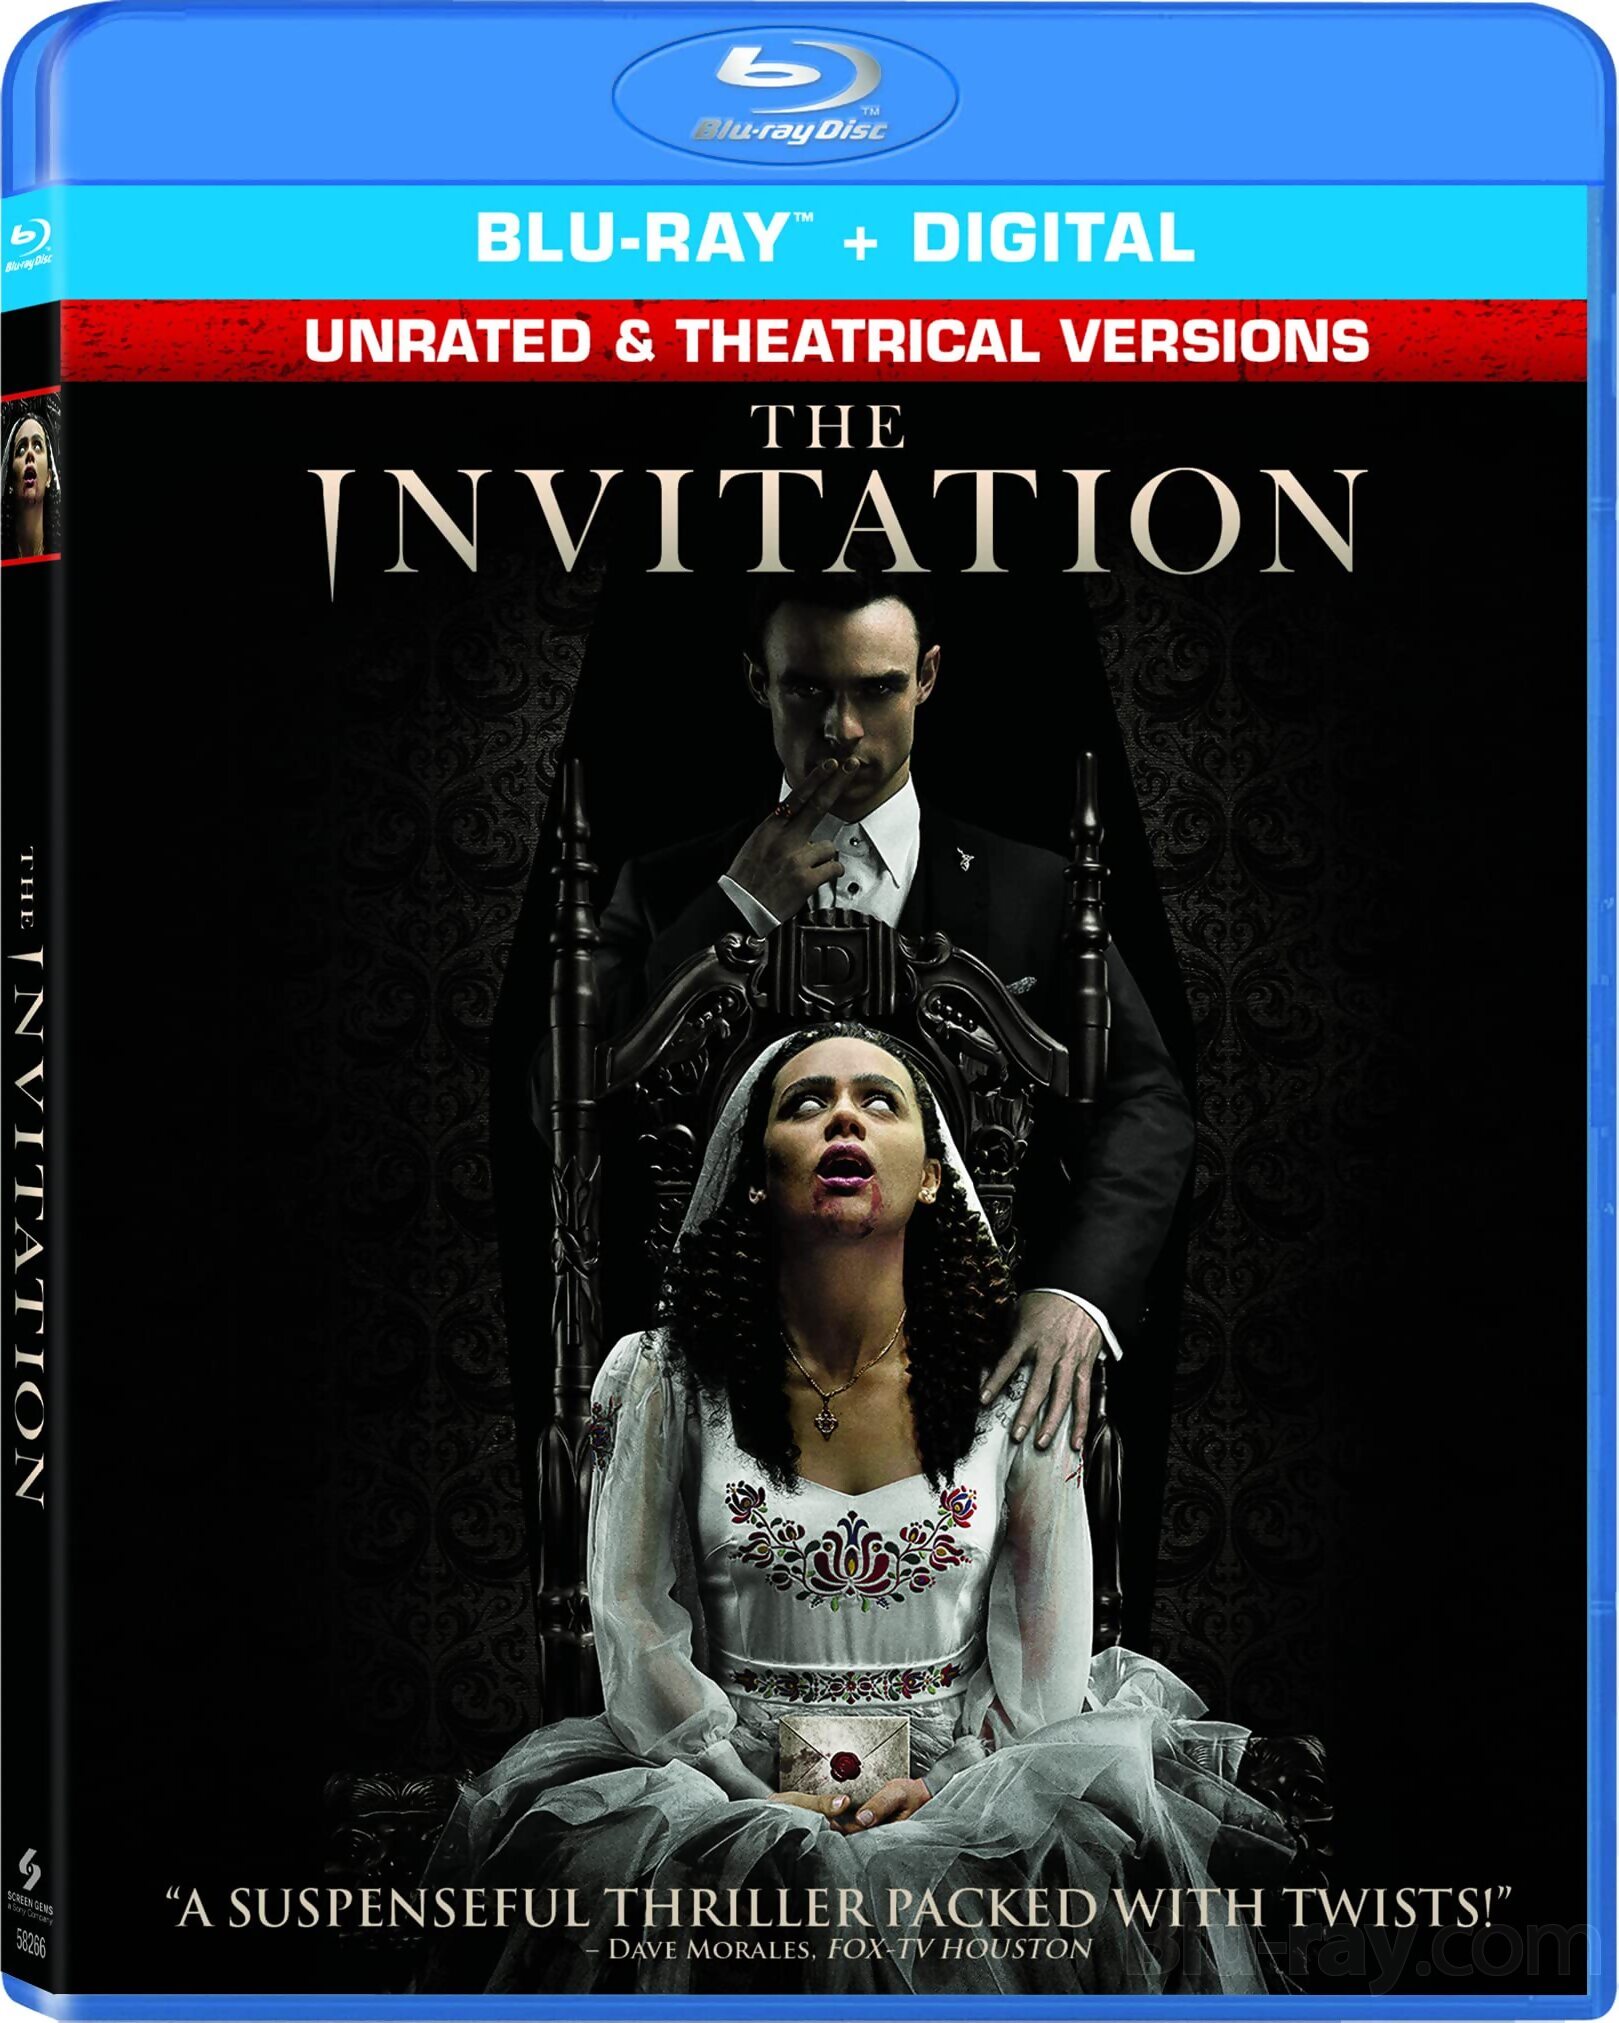 The Invitation (2022) New Hollywood Hindi Movie ORG [Hindi - English] BluRay 1080p, 720p & 480p Download